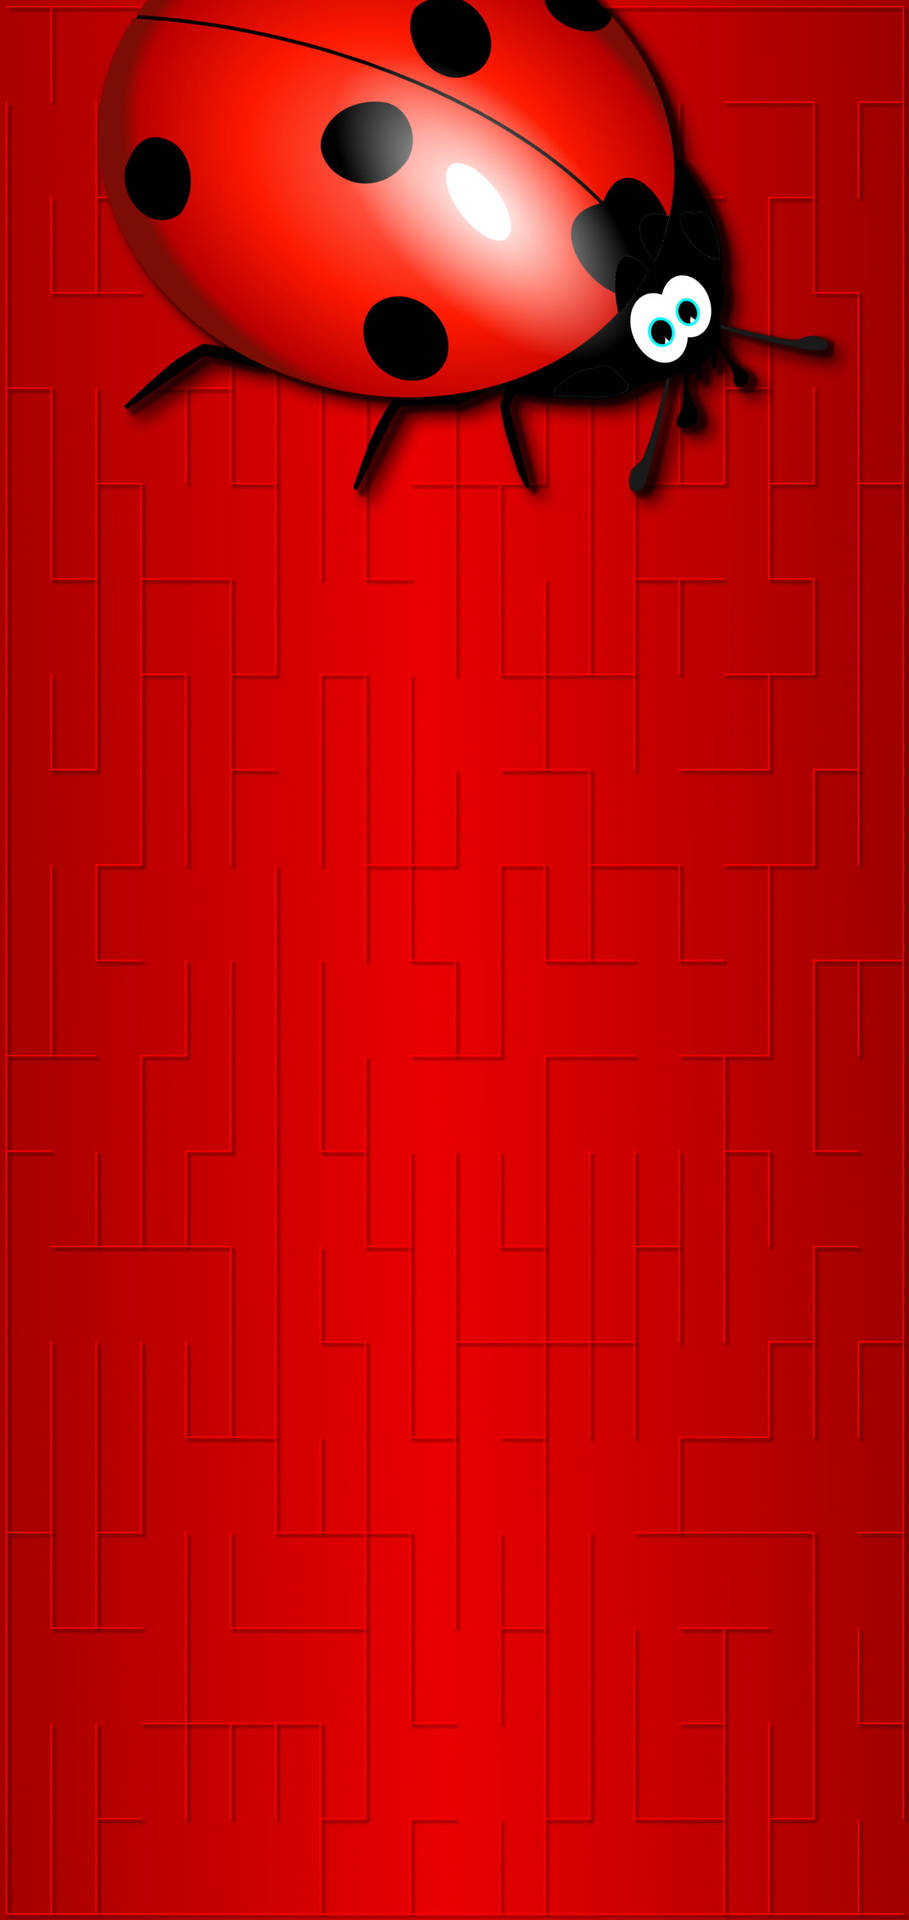 Rödnyckelpiga Genomslagshål 4k. Wallpaper